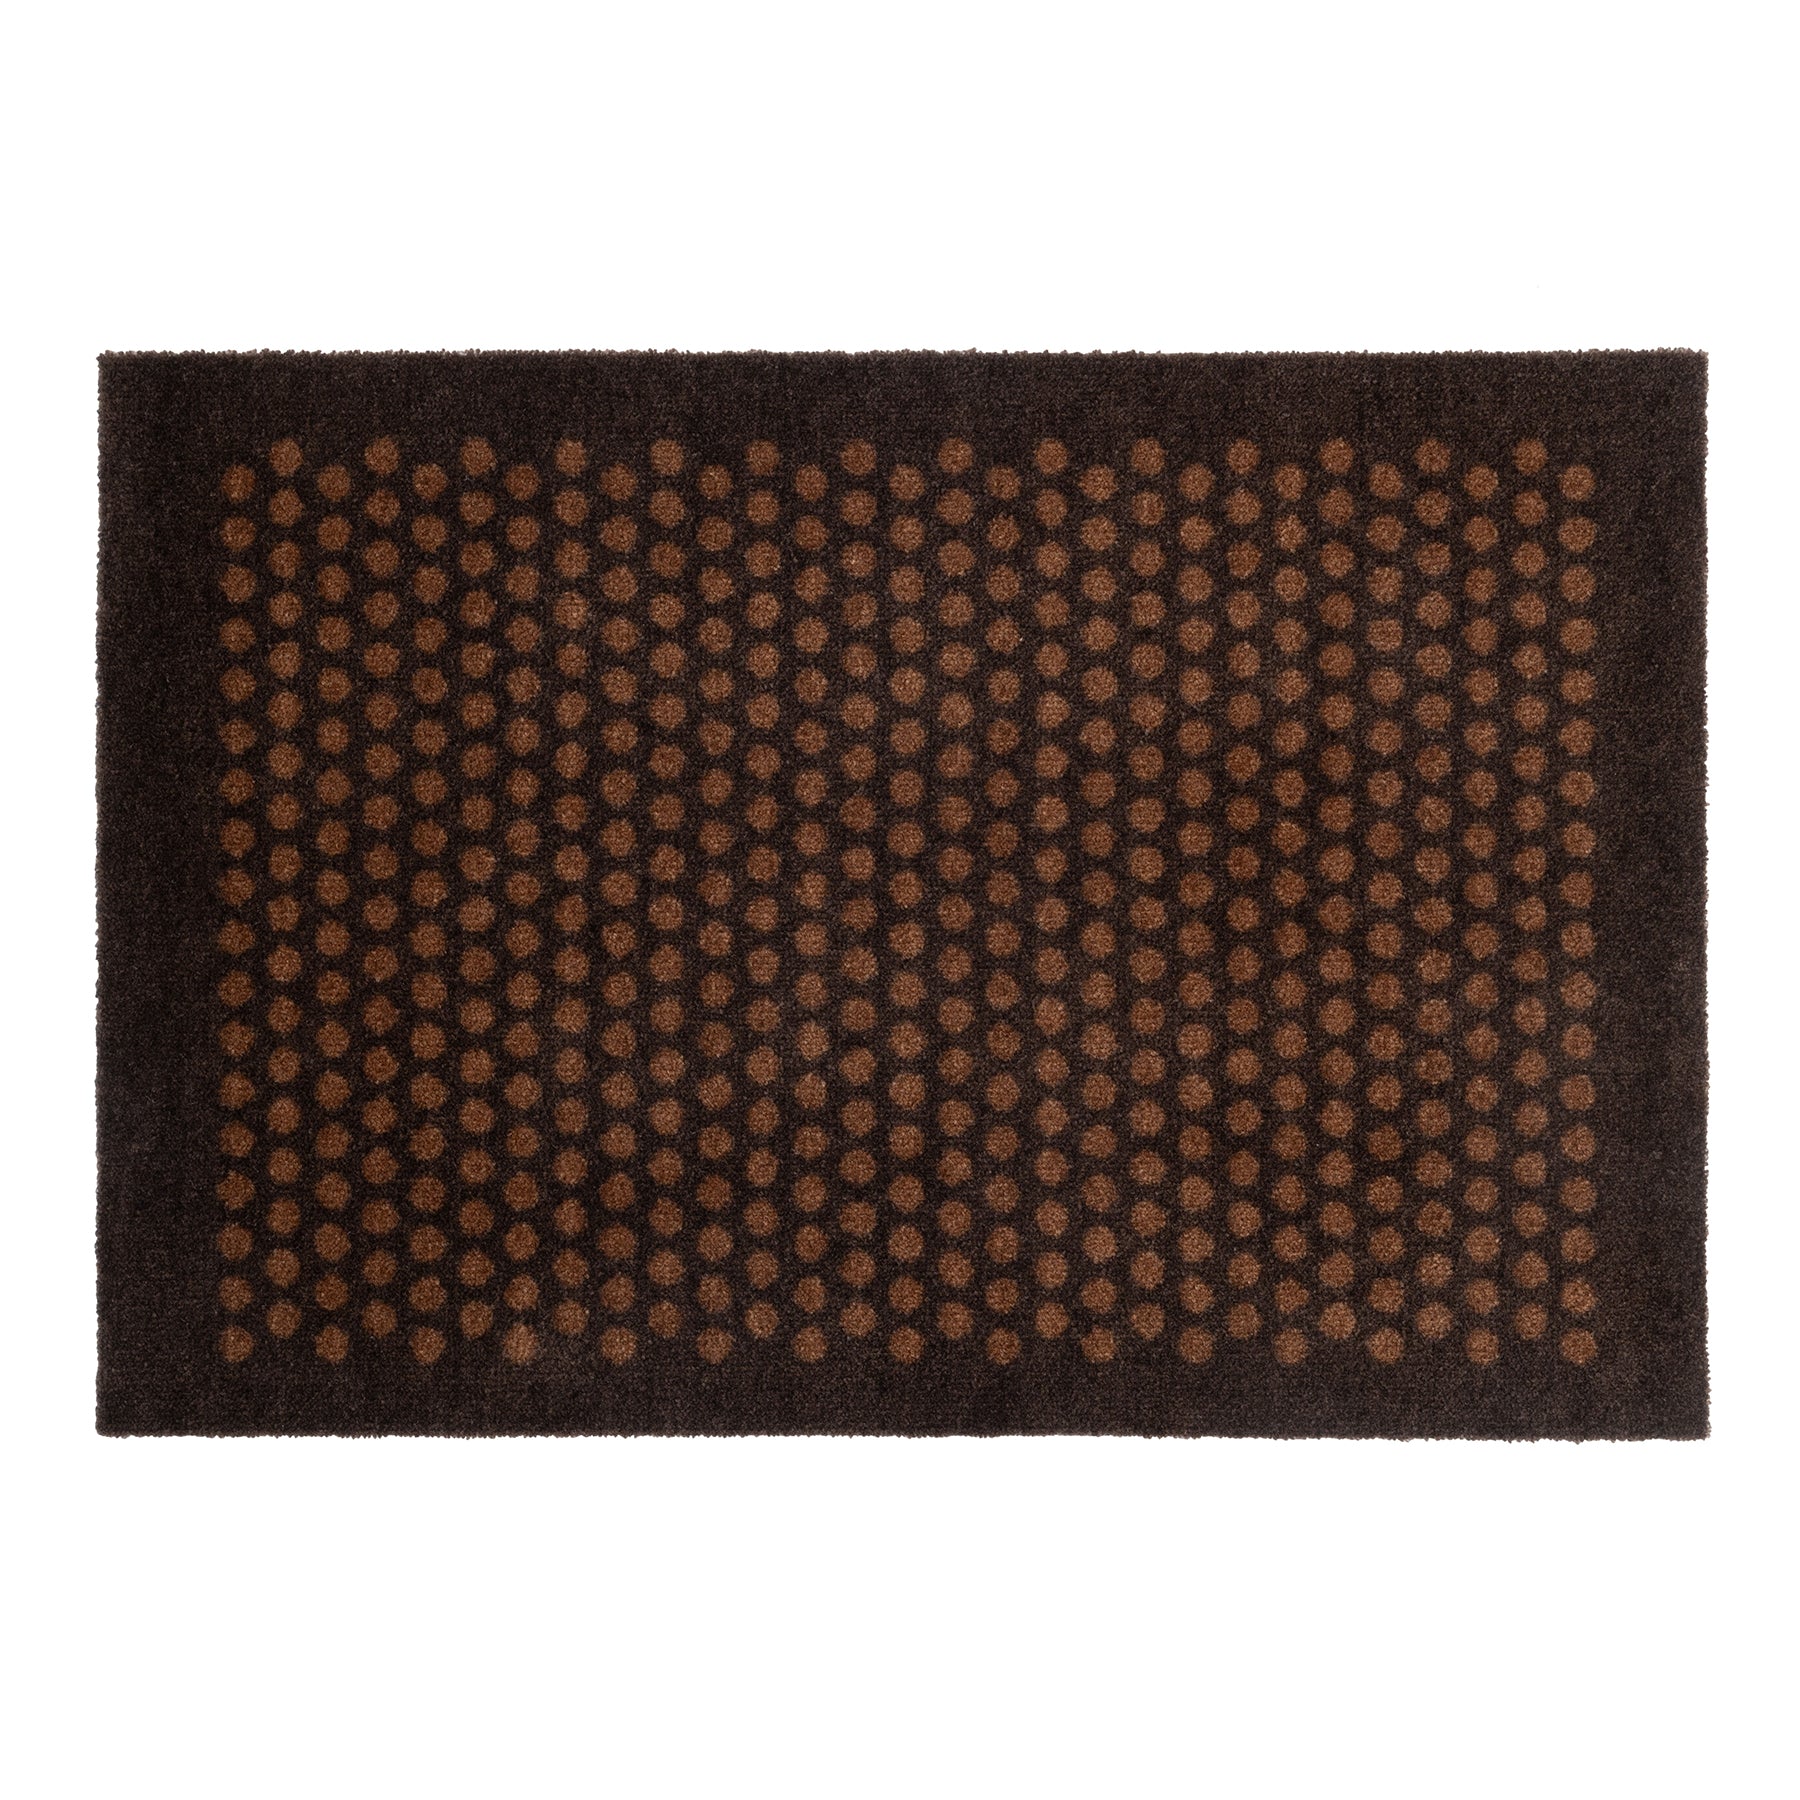 Uutiset - matto/pakollinen 60 x 90 cm - piste/konjakki -dark ruskea